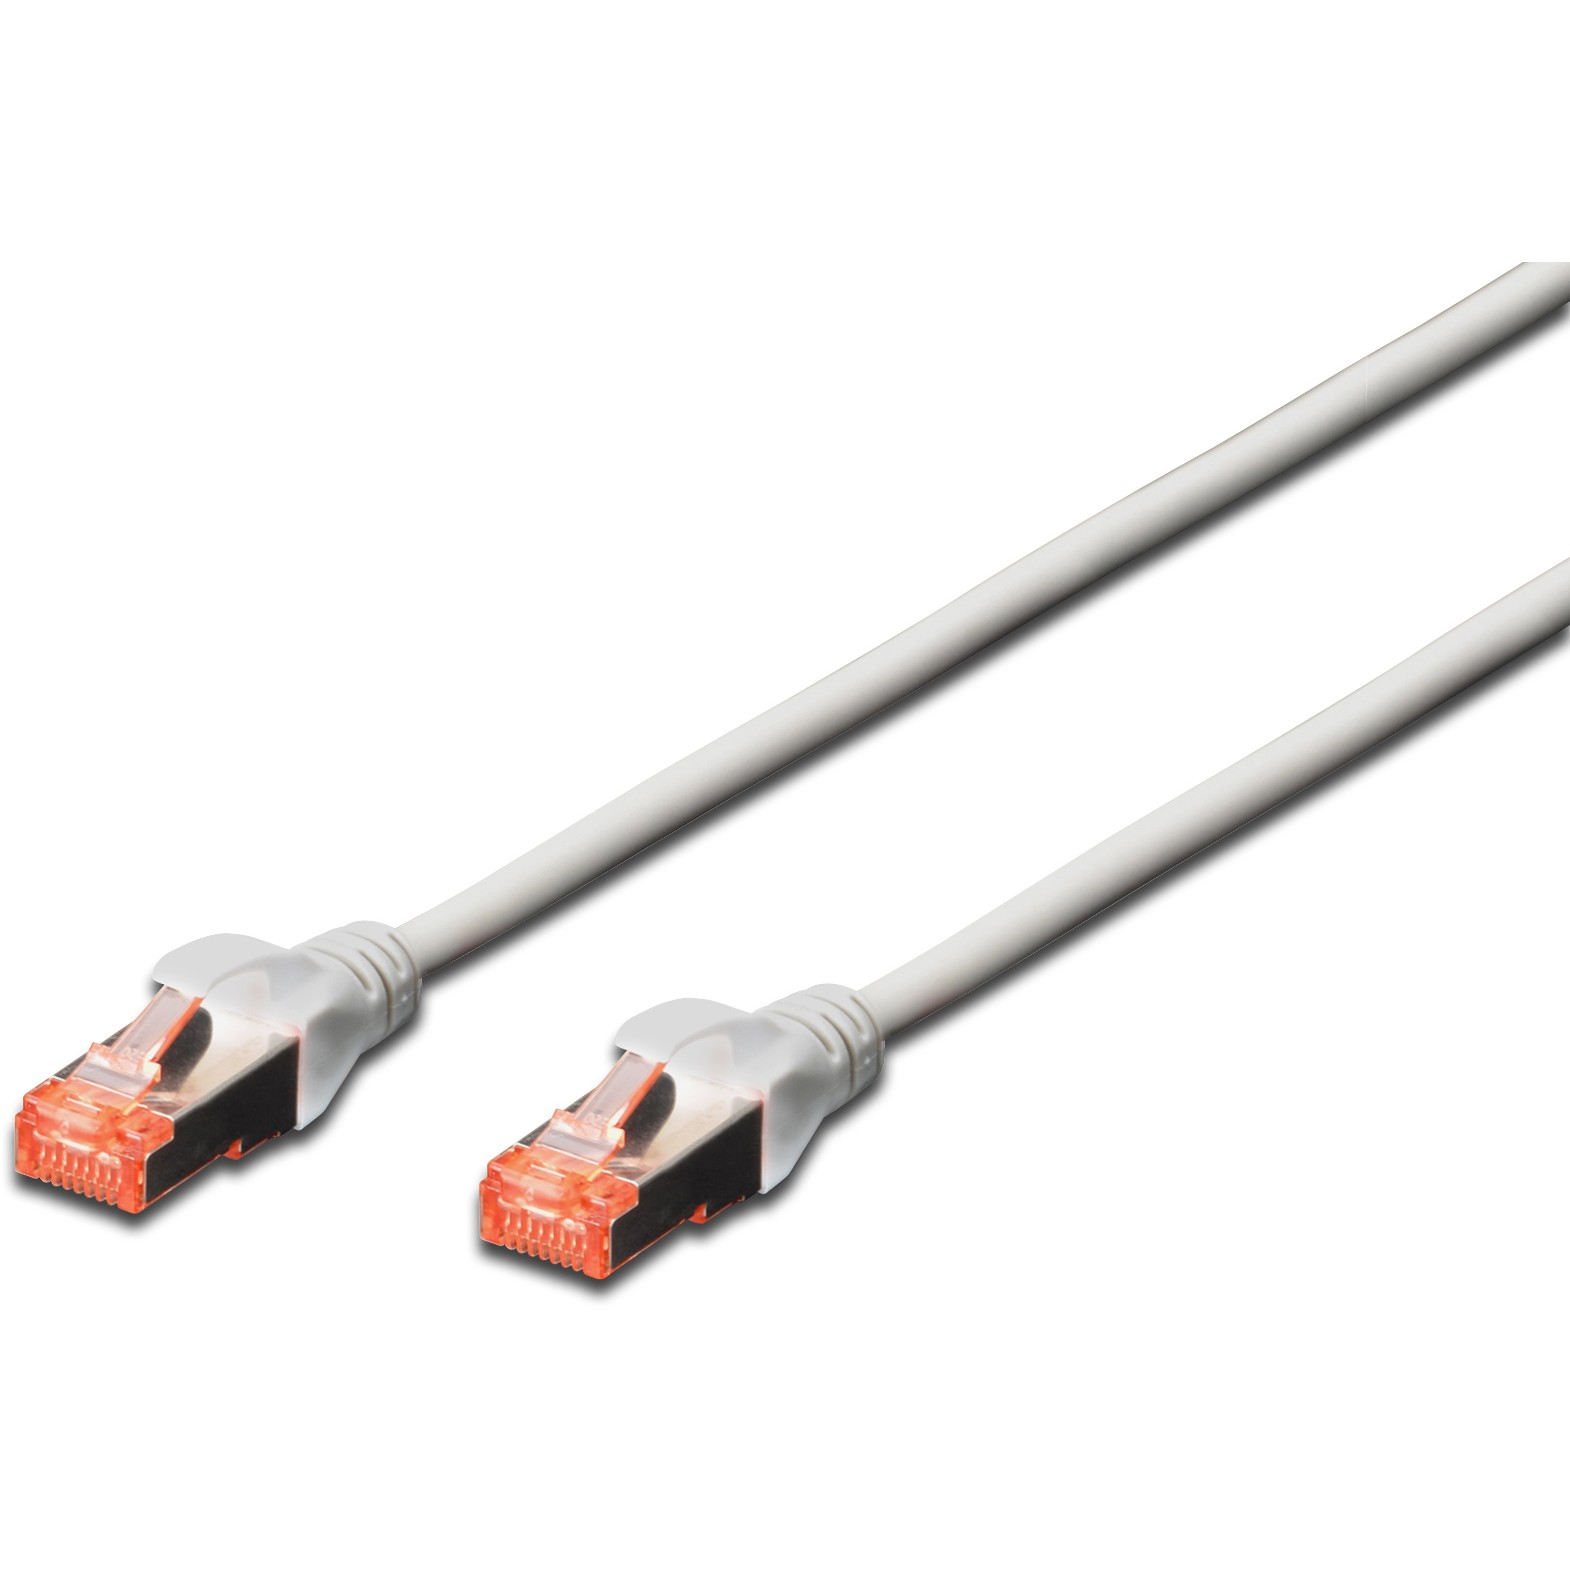 Digitus DK-1644-100, Netzwerk Cat-Kabel, Digitus cable  (BILD1)